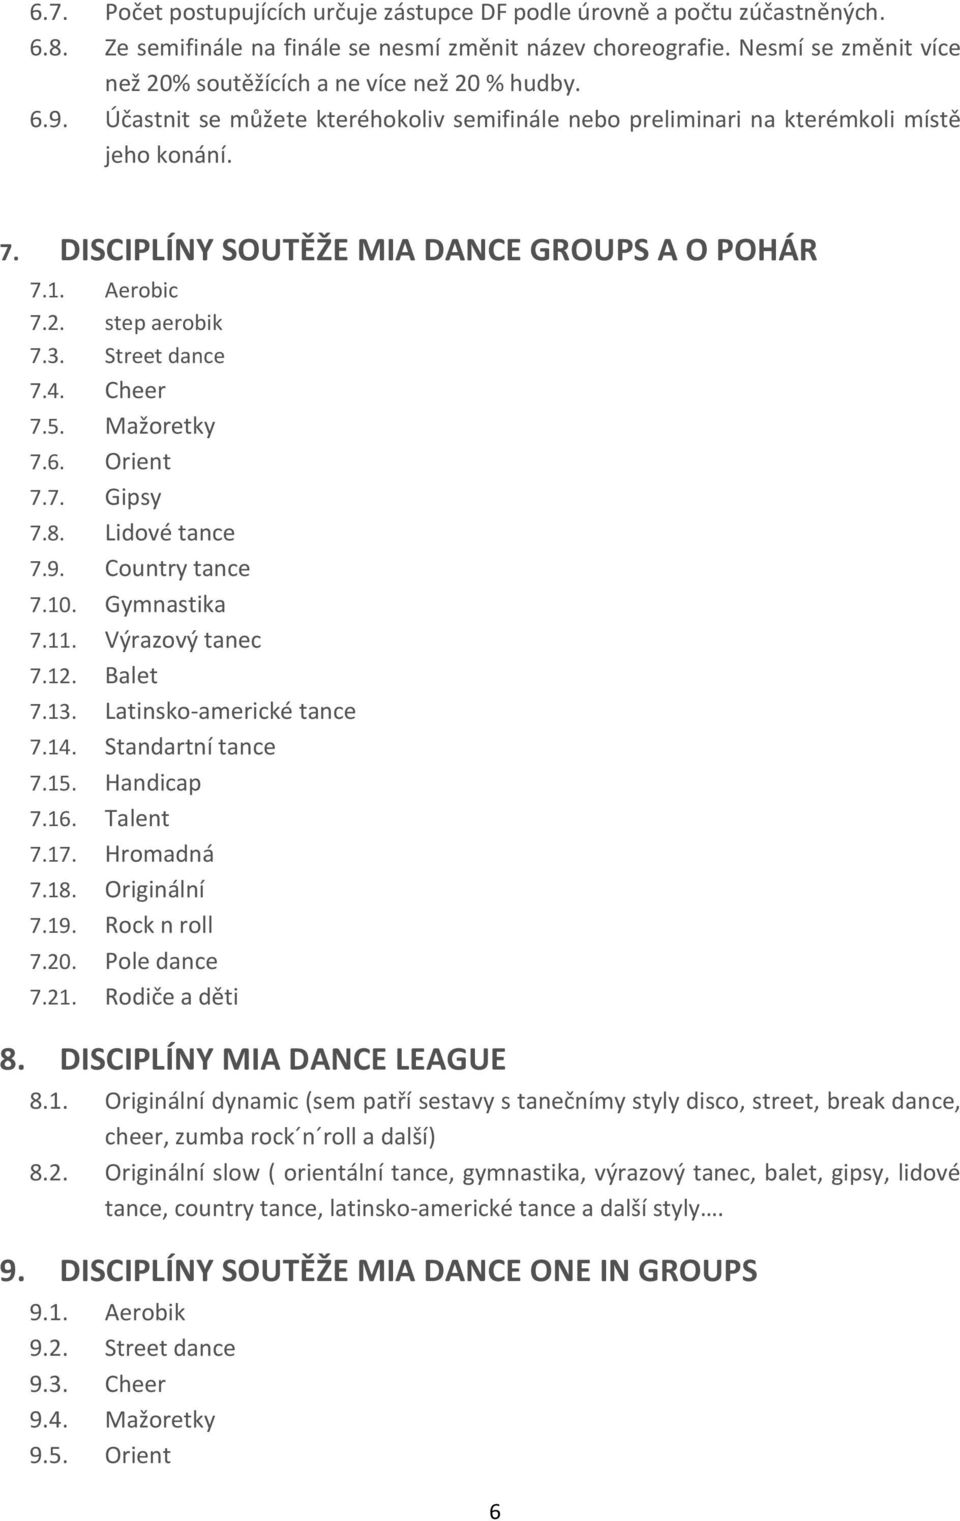 DISCIPLÍNY SOUTĚŽE MIA DANCE GROUPS A O POHÁR 7.1. Aerobic 7.2. step aerobik 7.3. Street dance 7.4. Cheer 7.5. Mažoretky 7.6. Orient 7.7. Gipsy 7.8. Lidové tance 7.9. Country tance 7.10. Gymnastika 7.